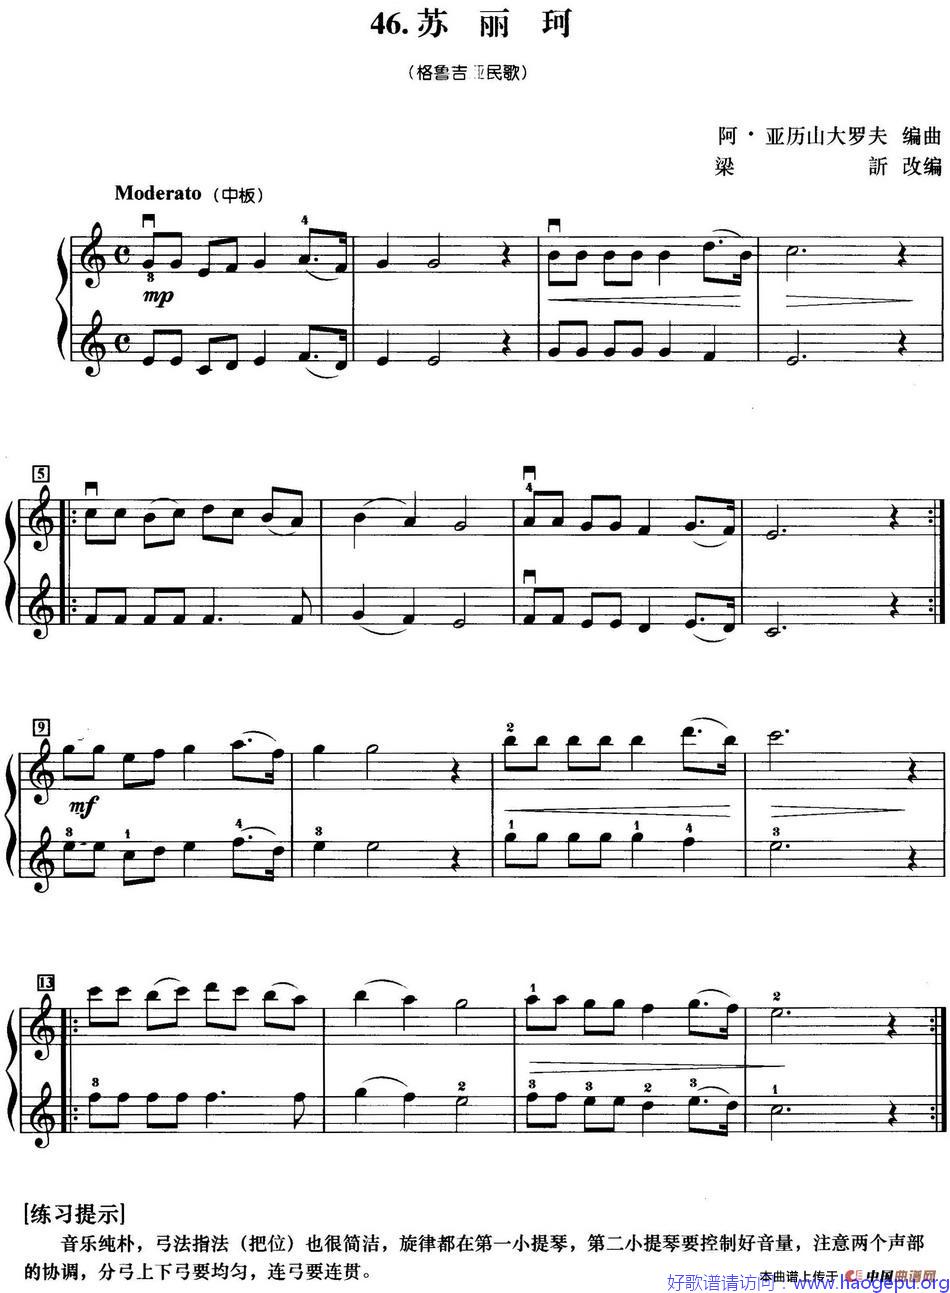 初级小提琴二重奏:苏丽珂歌谱